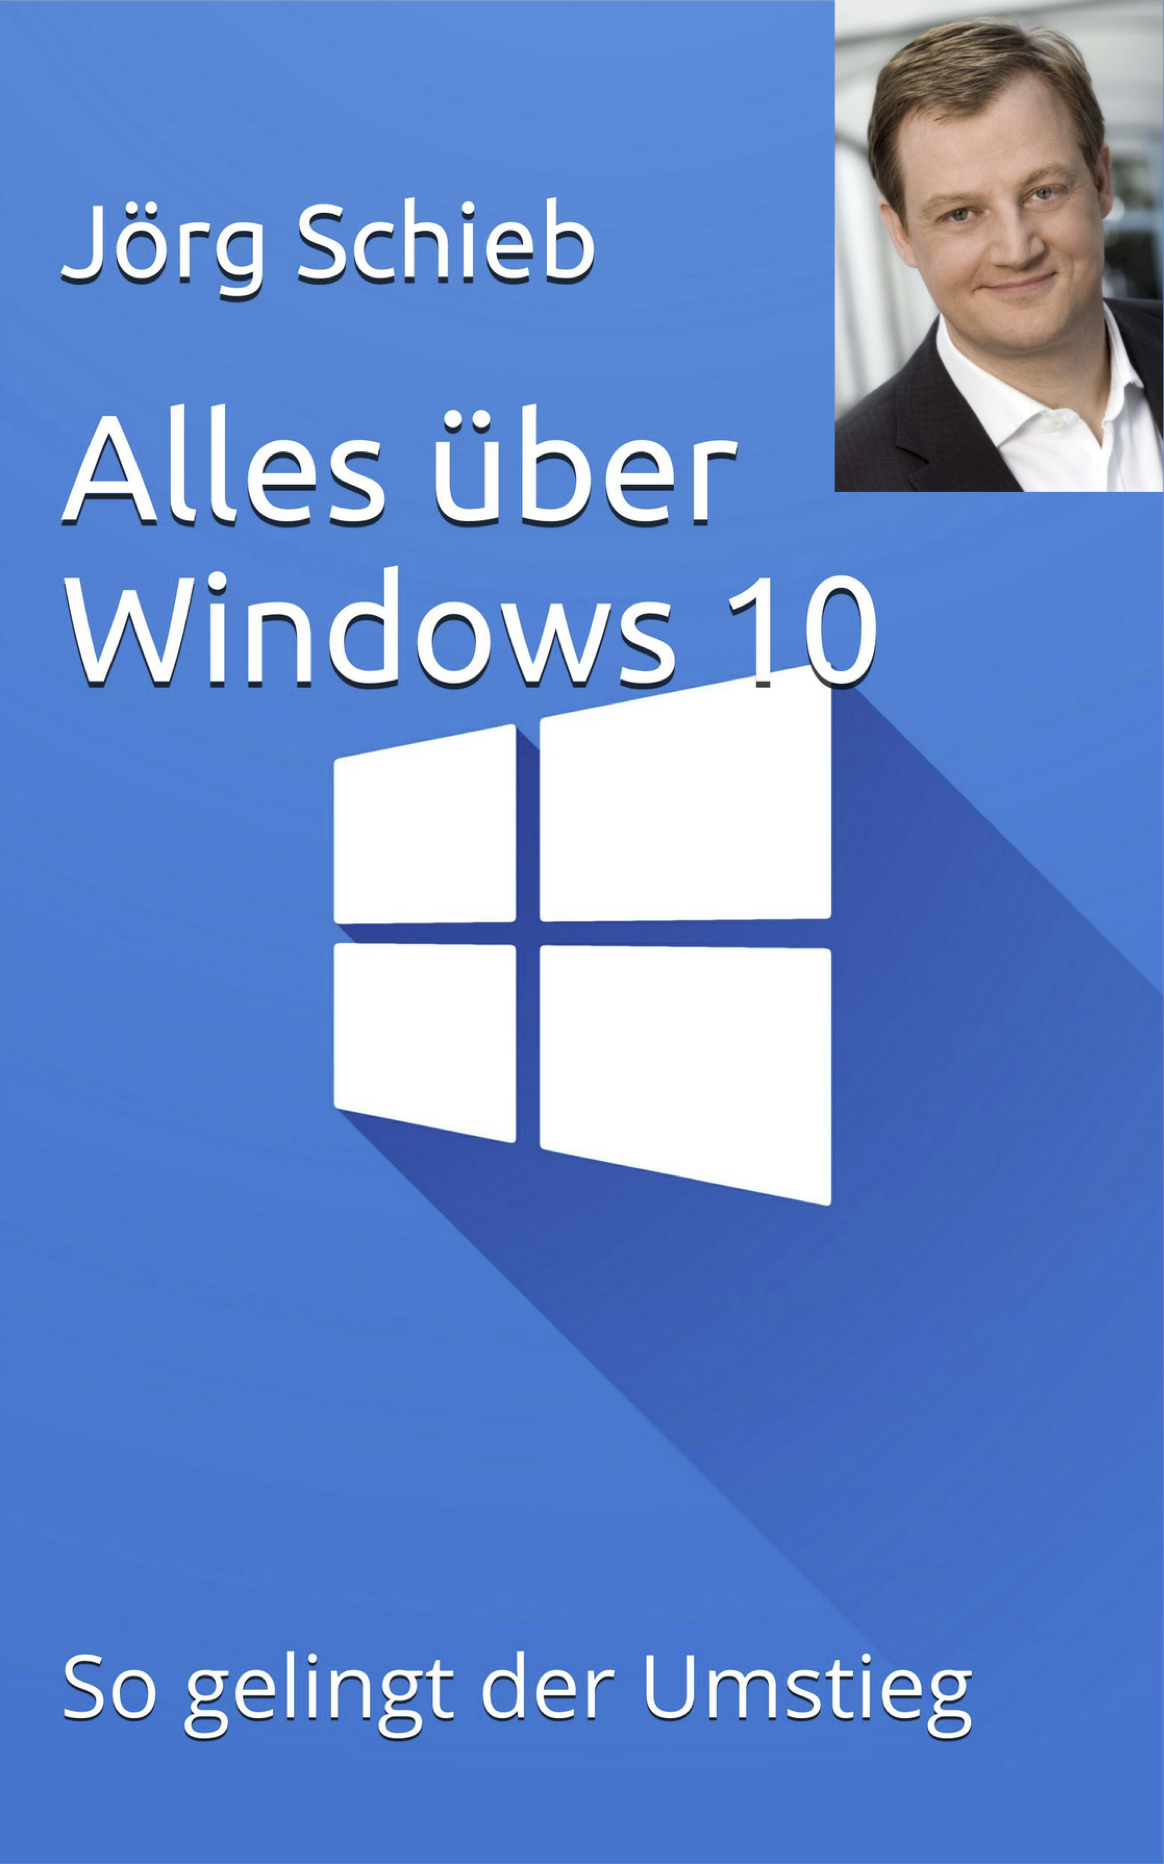 Update auf Windows 10: So gelingt der Umstieg